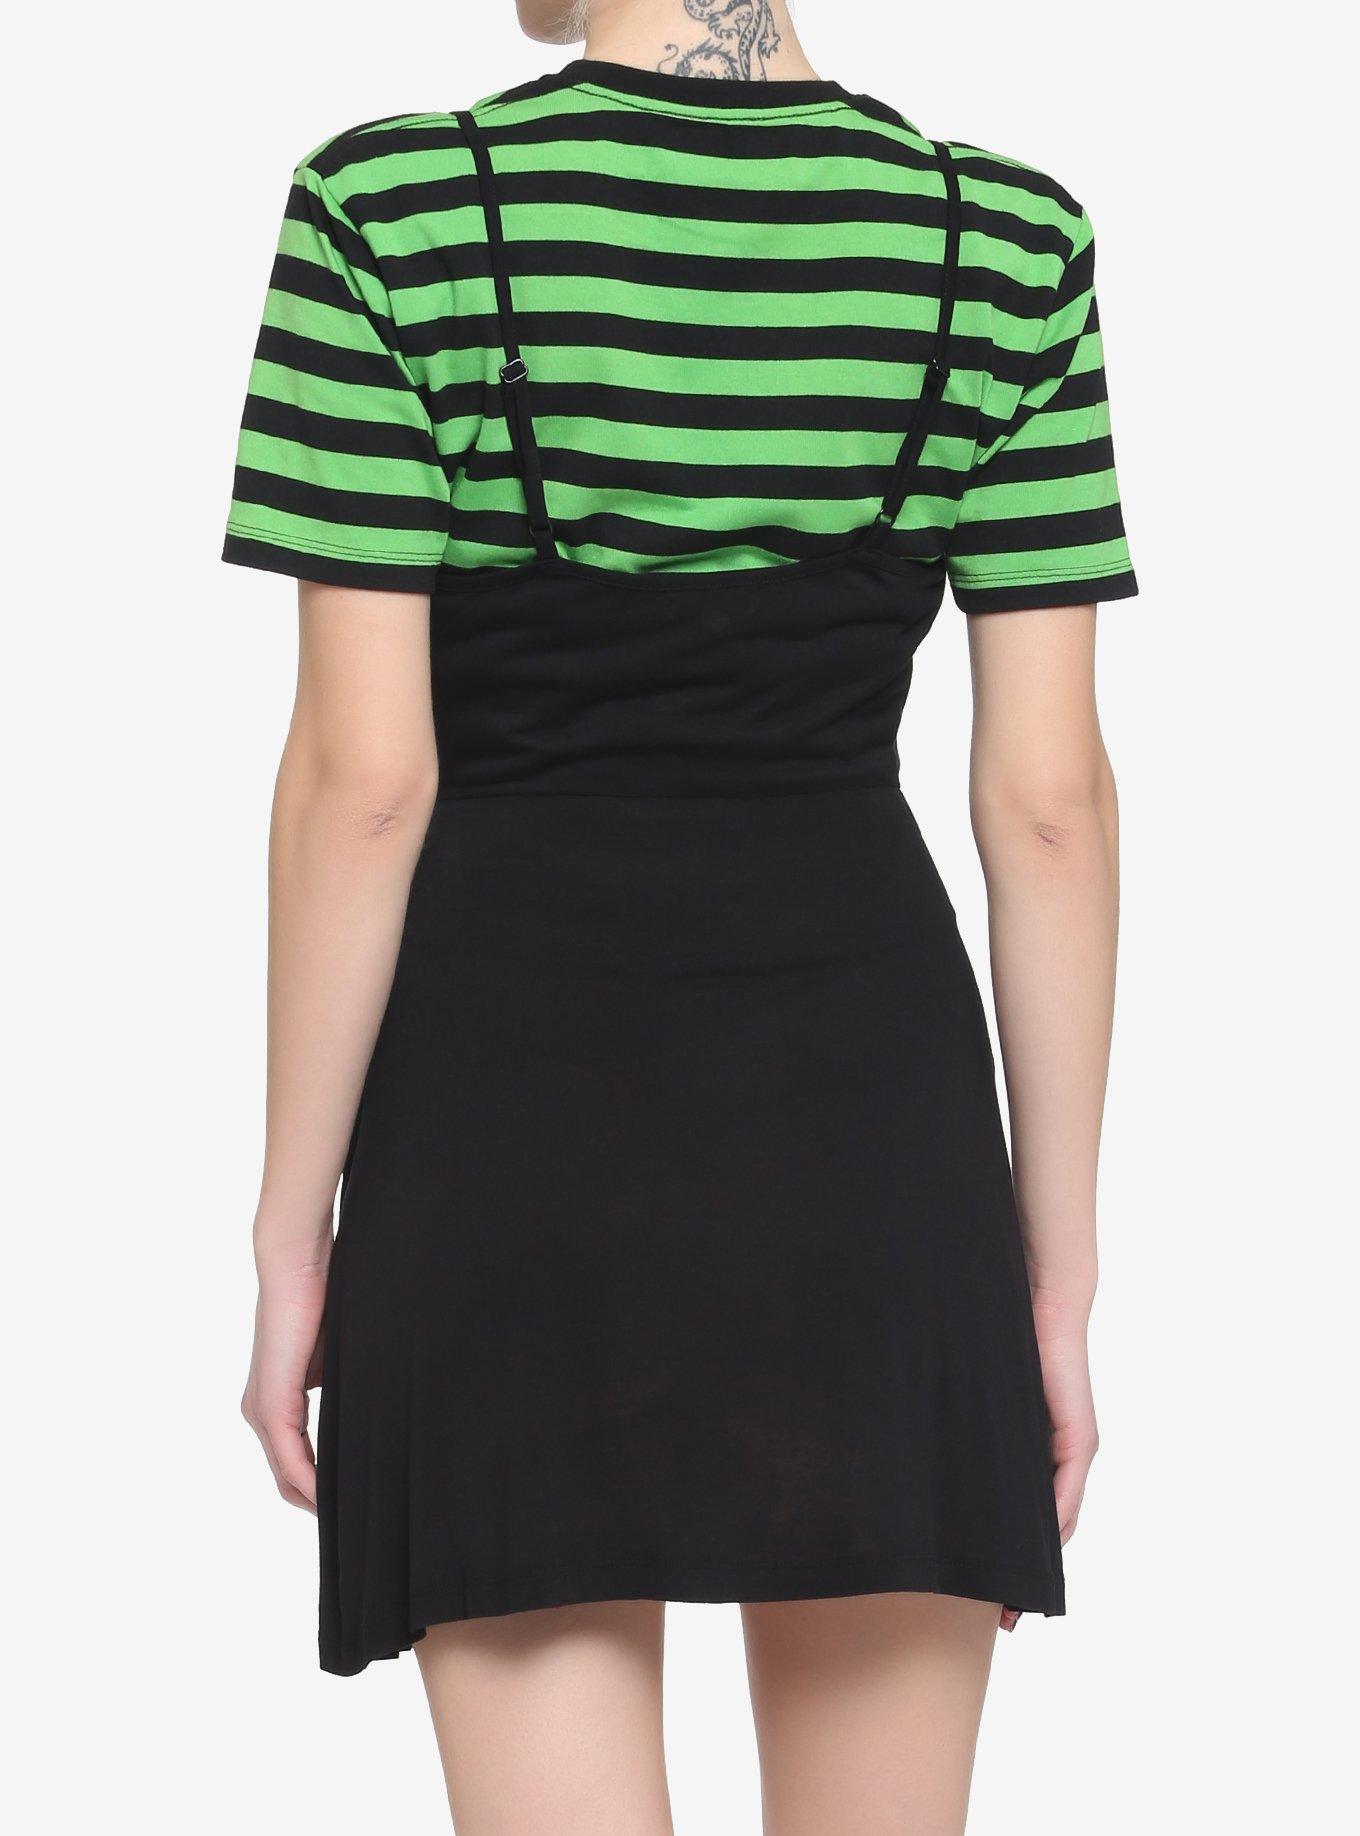 Black & Green Stripe Twofer Skater Dress, STRIPES, alternate